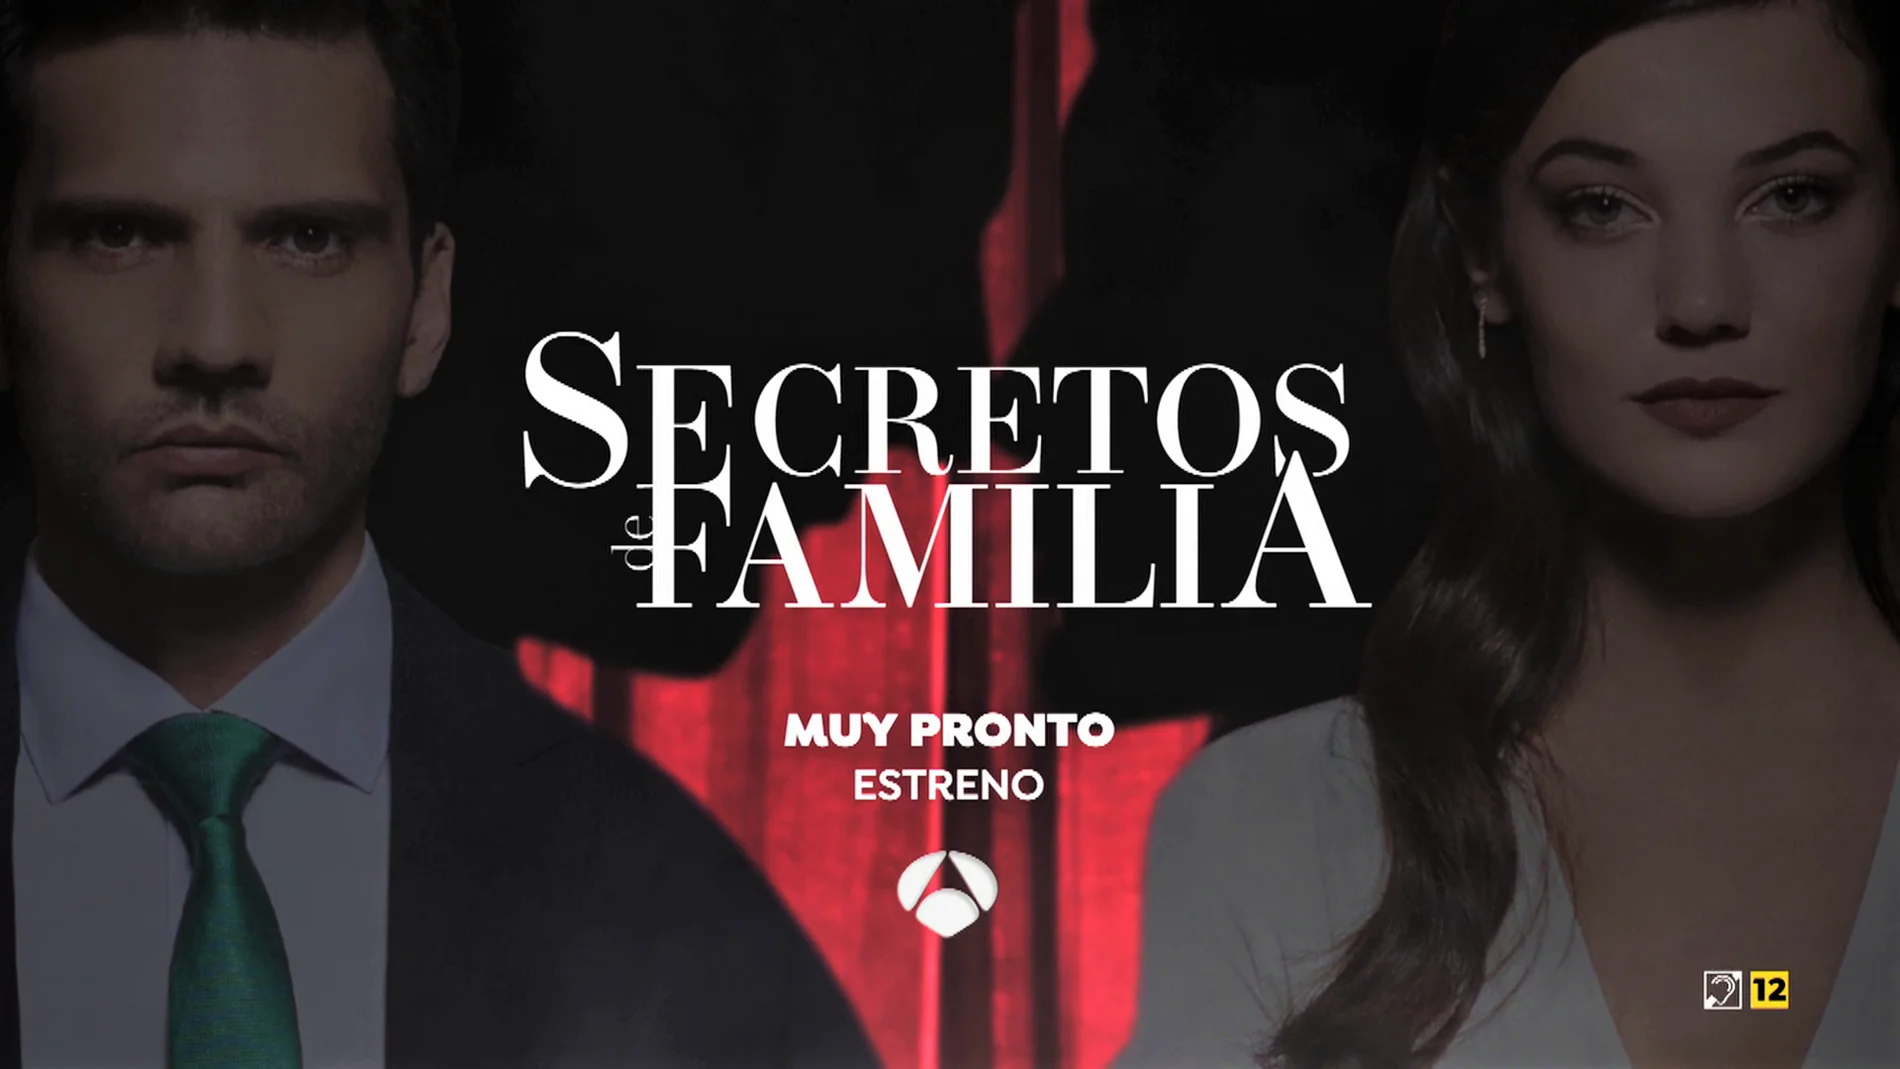 Relación Produce Perder Secretos de Familia', muy pronto estreno en Antena 3